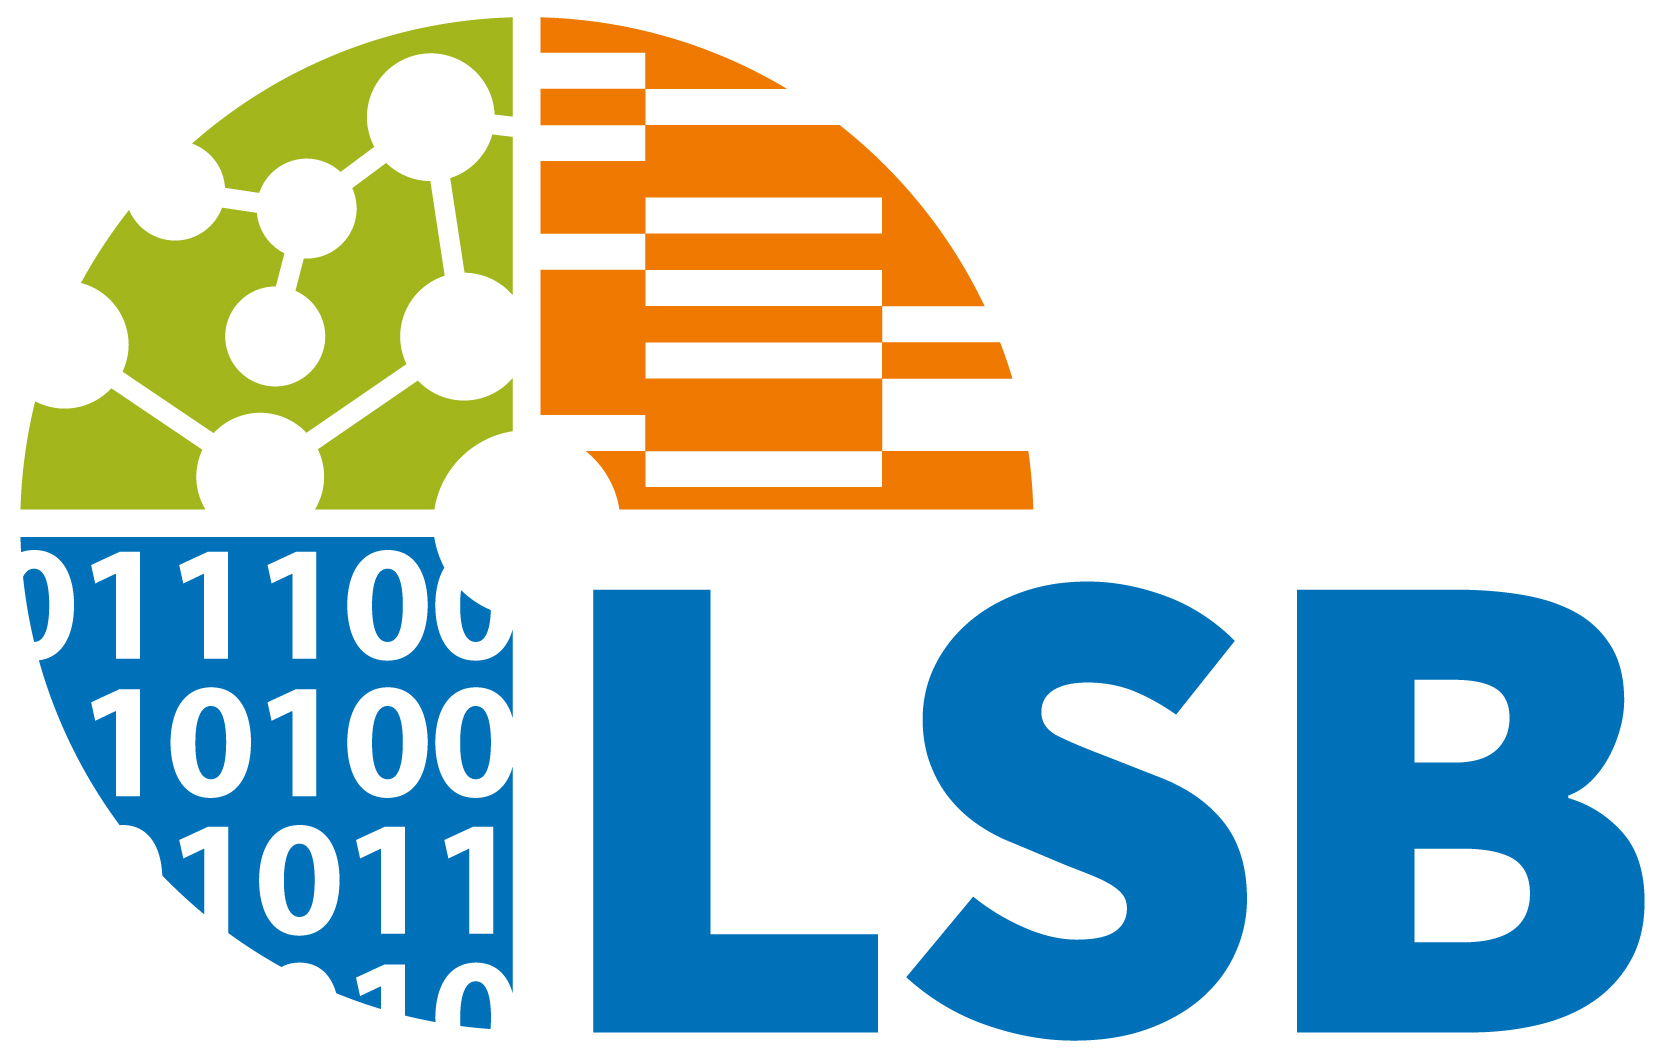 Logo: Leibniz-Institut für Lebensmittel-Systembiologie